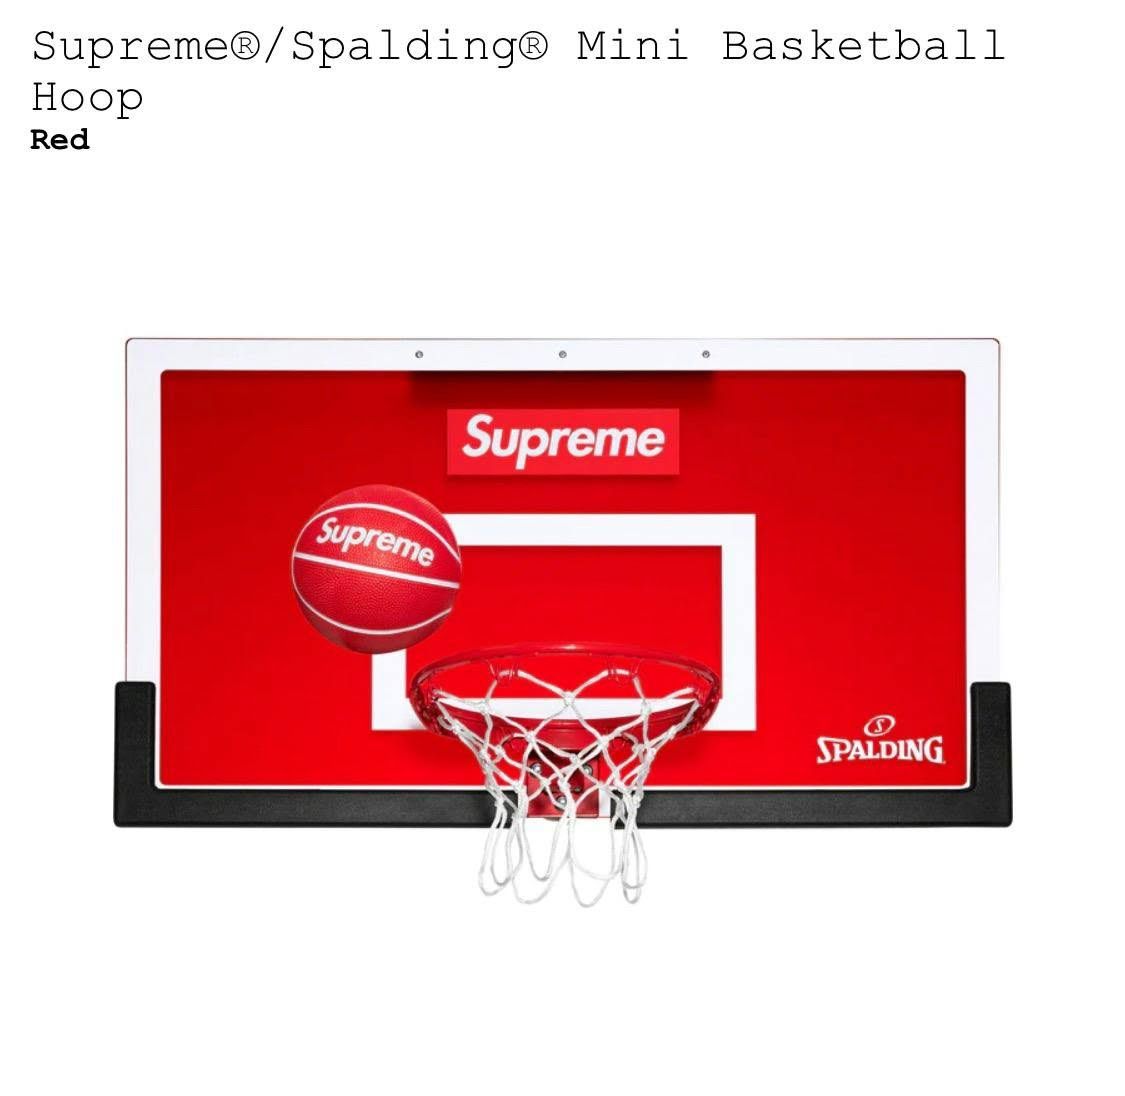 Supreme Basketball Hoop Rare 